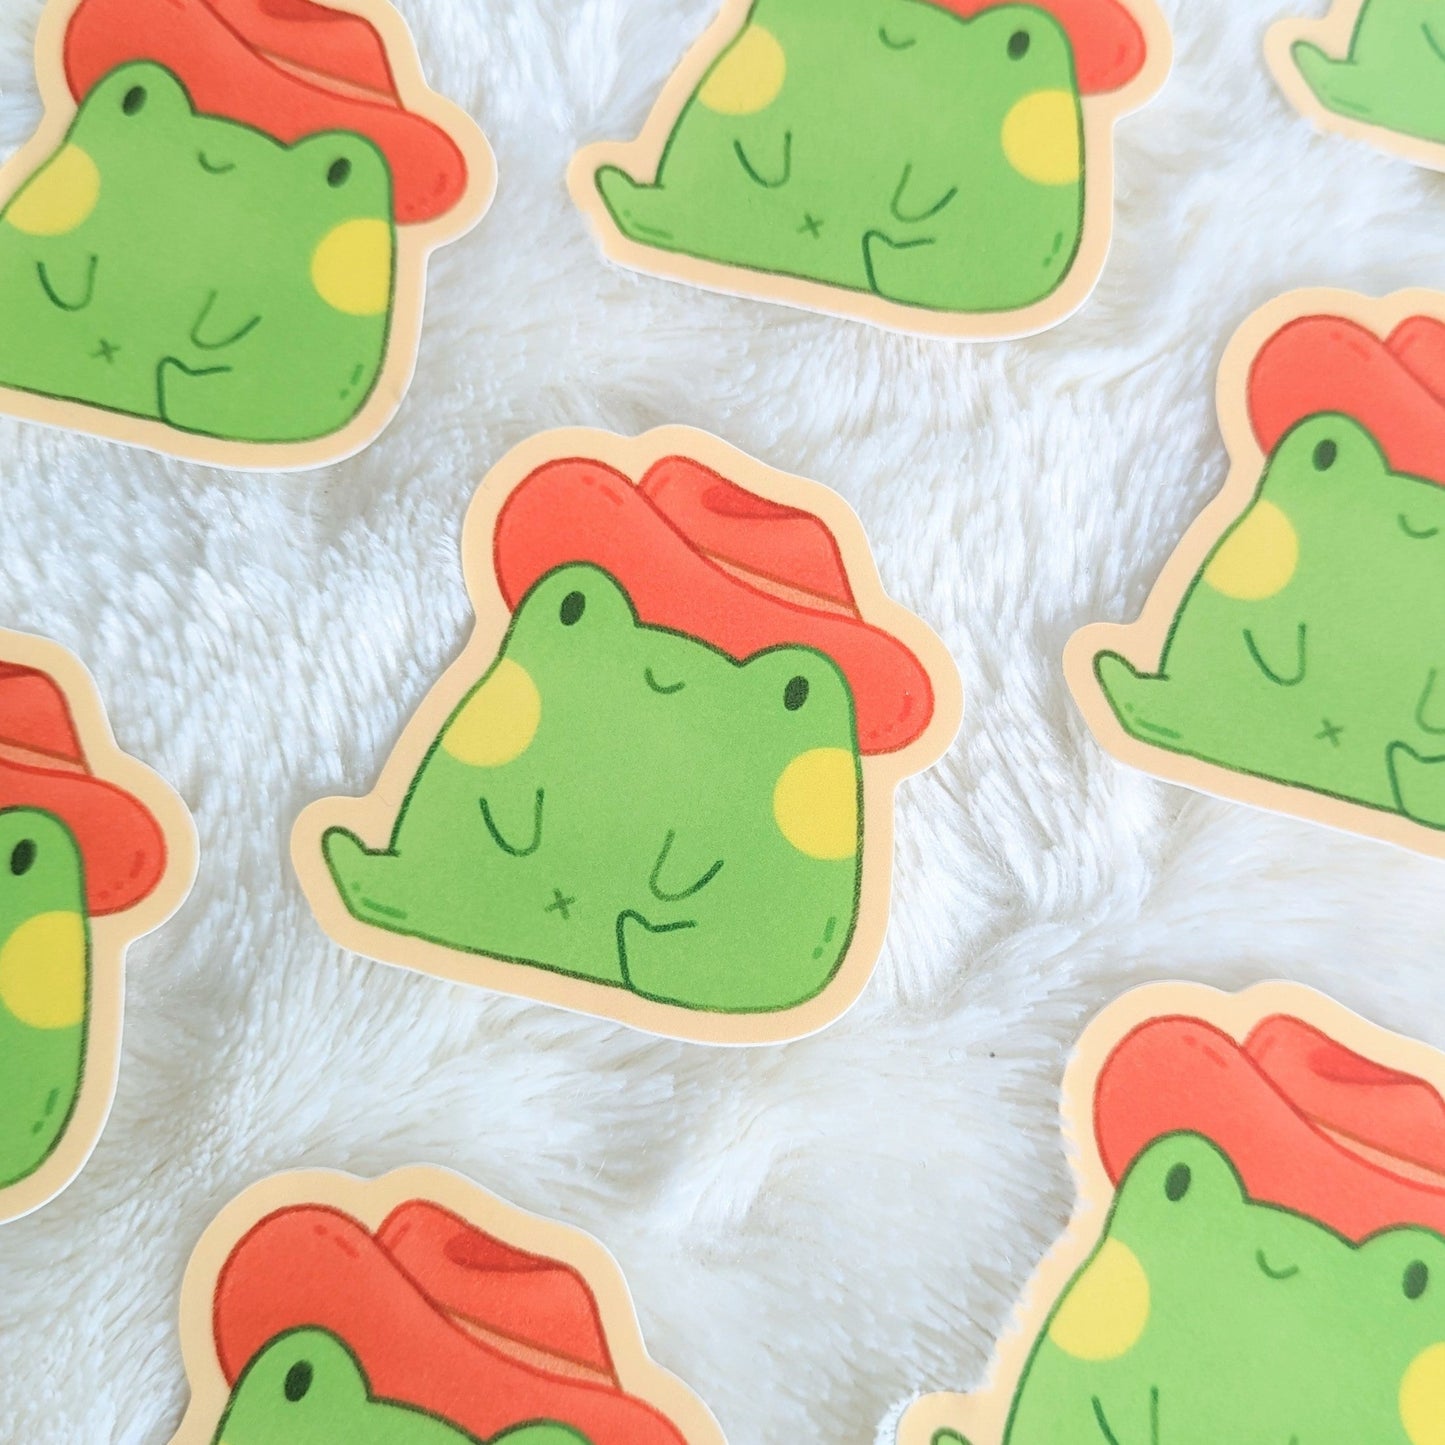 Yee-Frog Waterproof Stickers